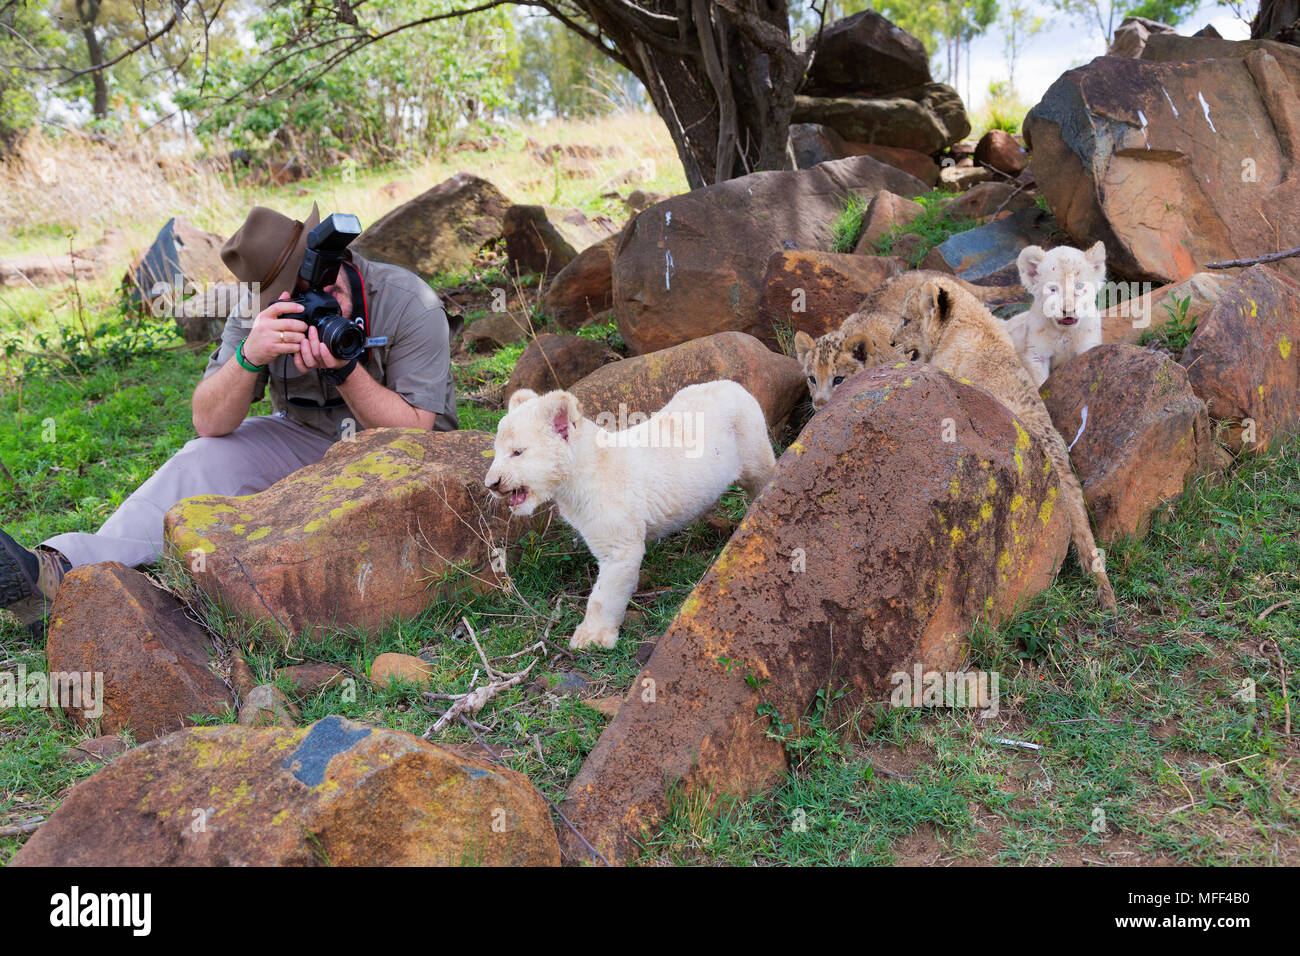 Man photographing des lionceaux, Afrique du Sud. Parution du modèle Banque D'Images